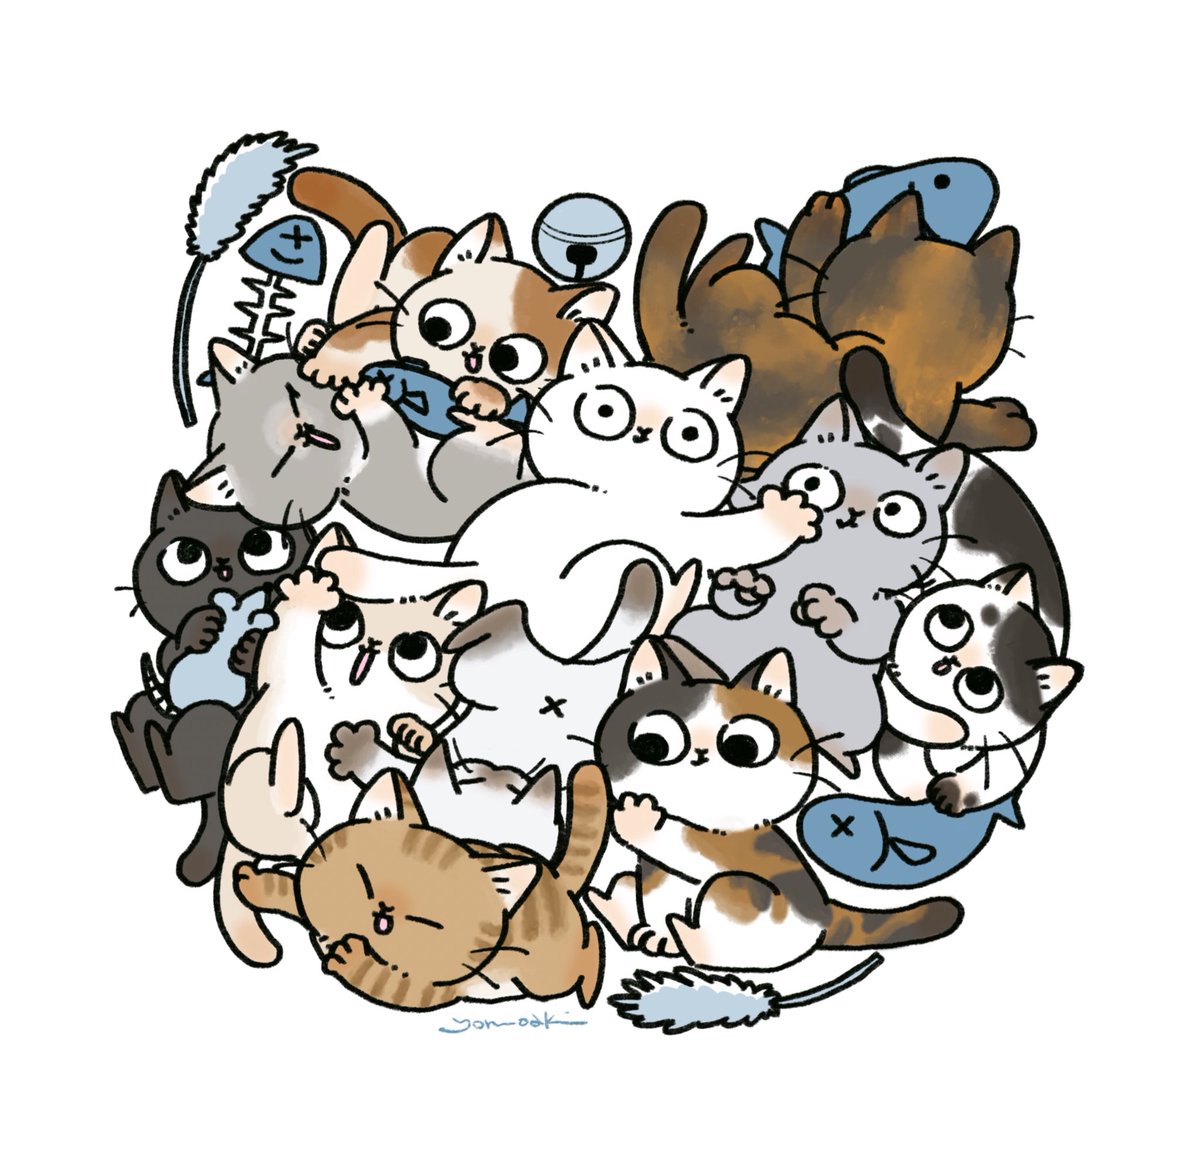 「いっぱいねこ!   #世界猫の日」|よるのあき@ドローイングモールのイラスト